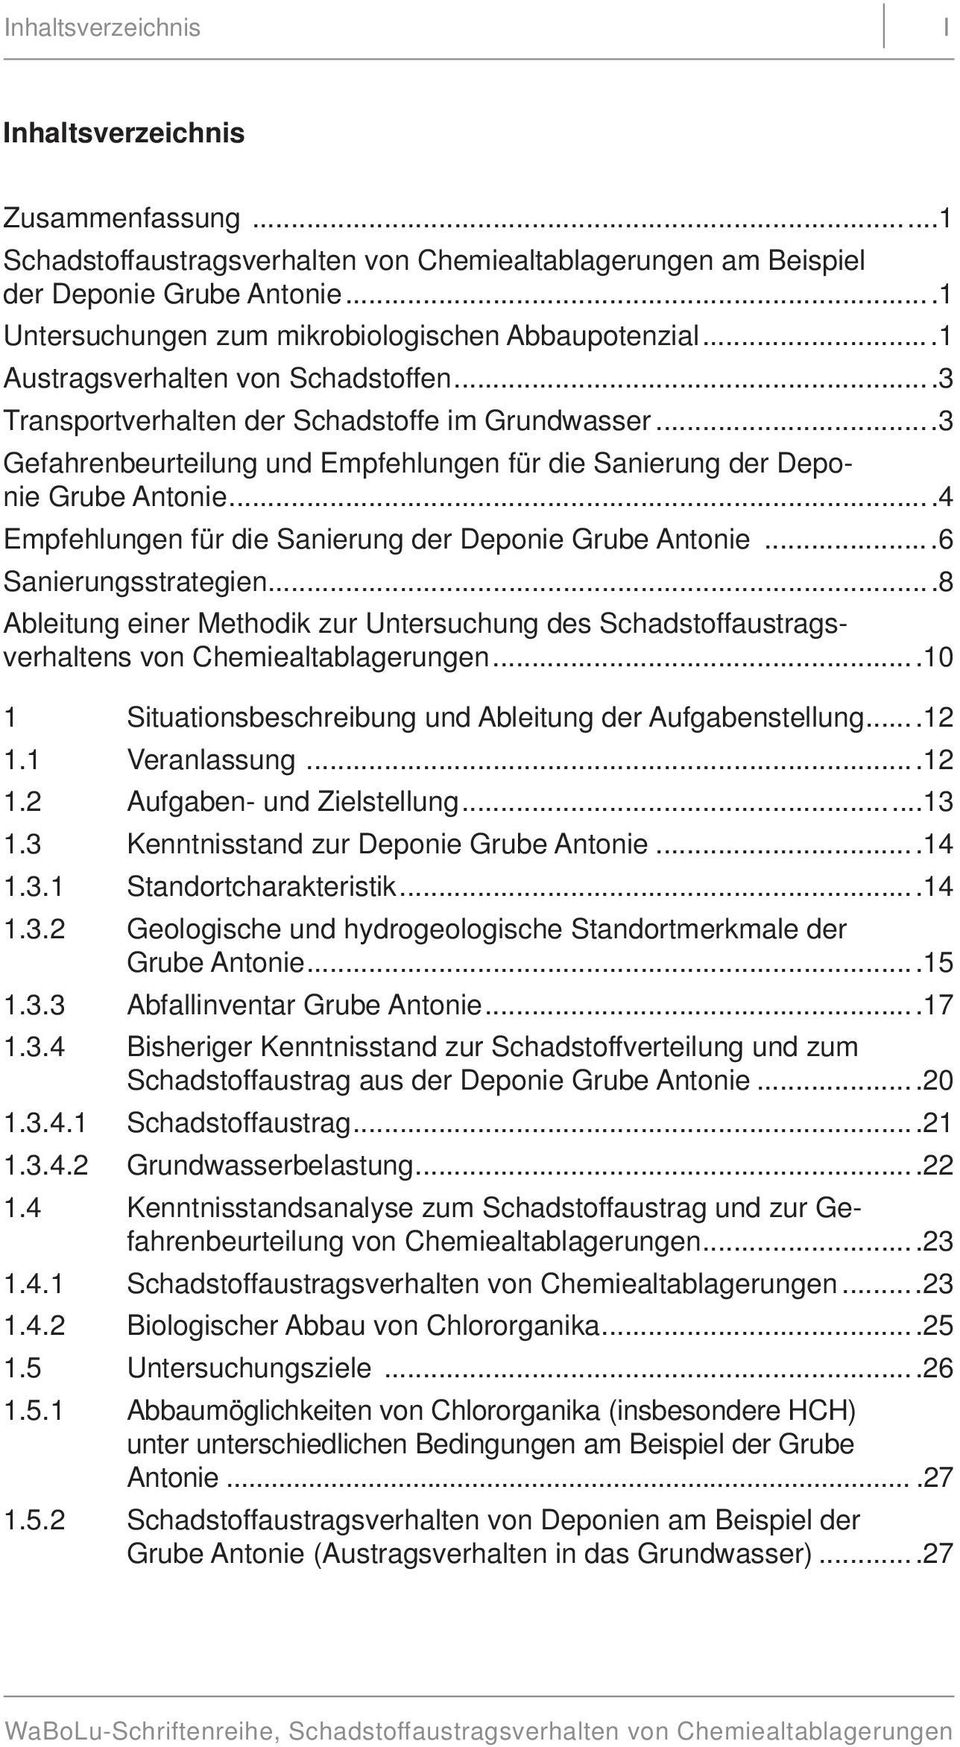 ..4 Empfehlungen für die Sanierung der Deponie Grube Antonie...6 Sanierungsstrategien...8 Ableitung einer Methodik zur Untersuchung des Schadstoffaustragsverhaltens von Chemiealtablagerungen.